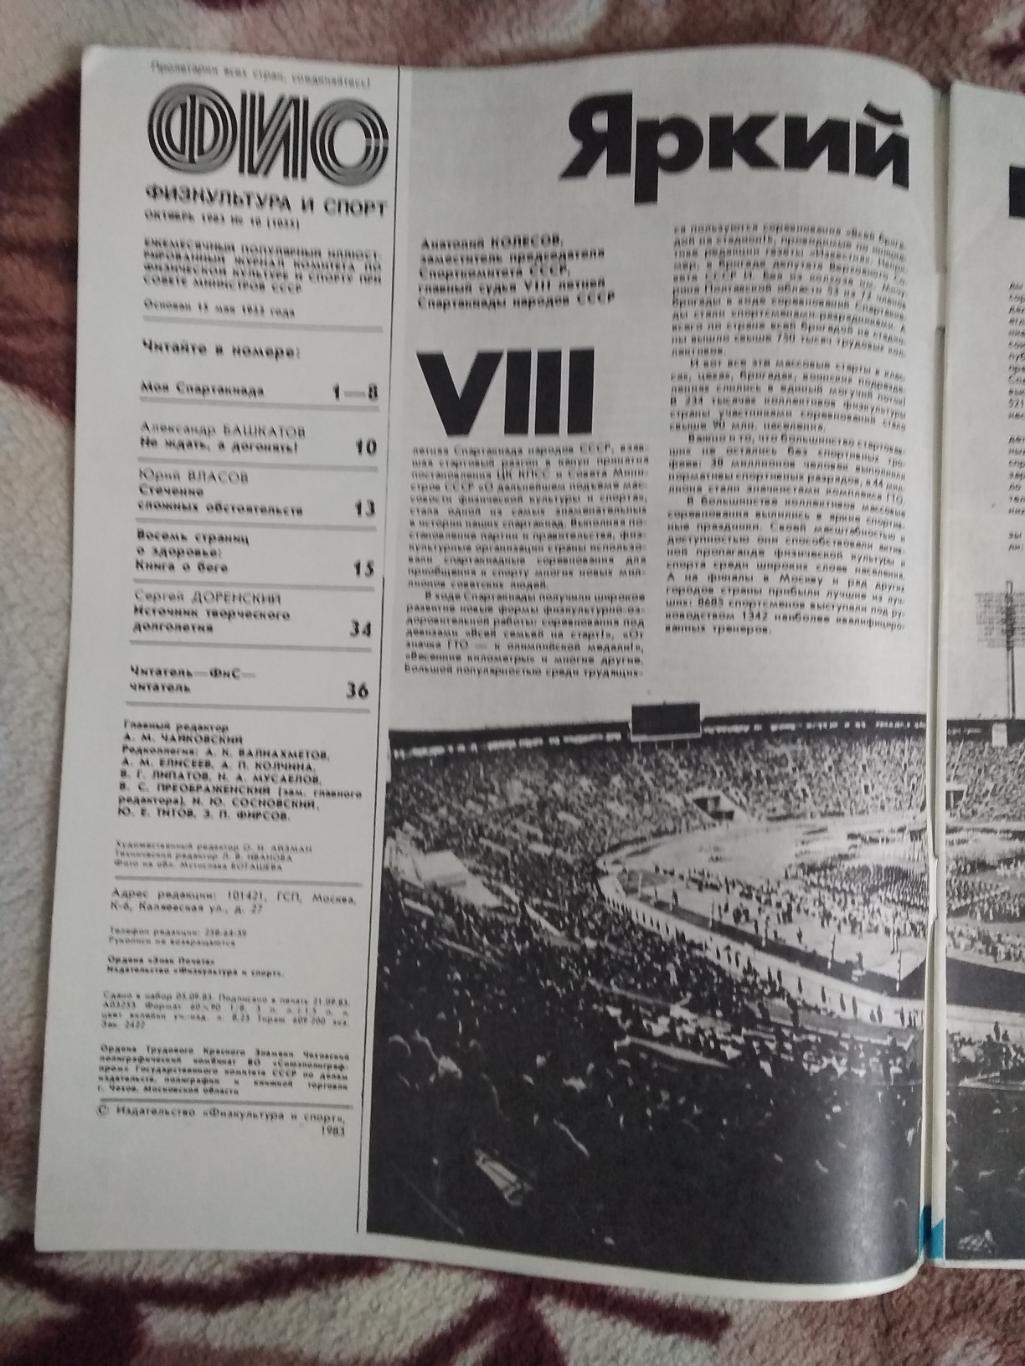 Журнал.Физкультура и спорт № 10 1983 г. (ФиС). 1